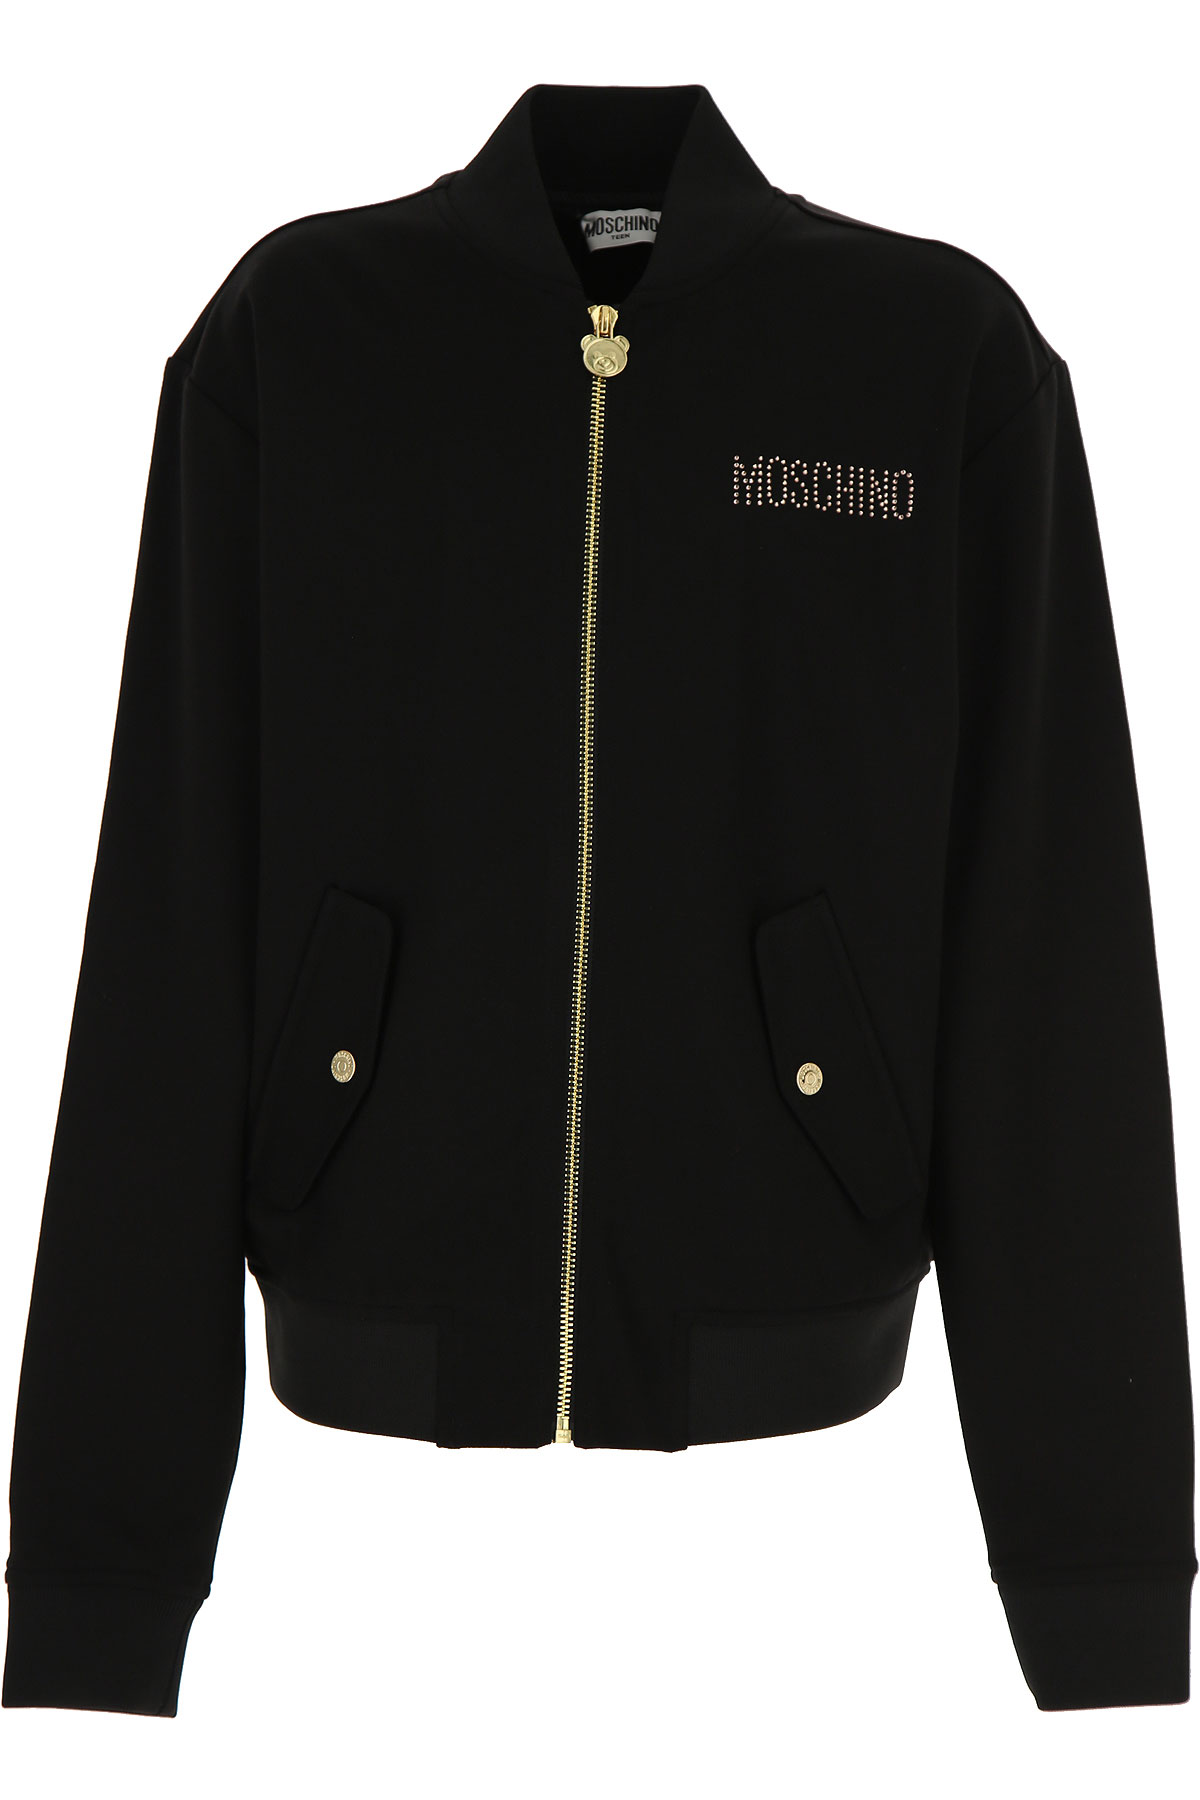 girls moschino jacket